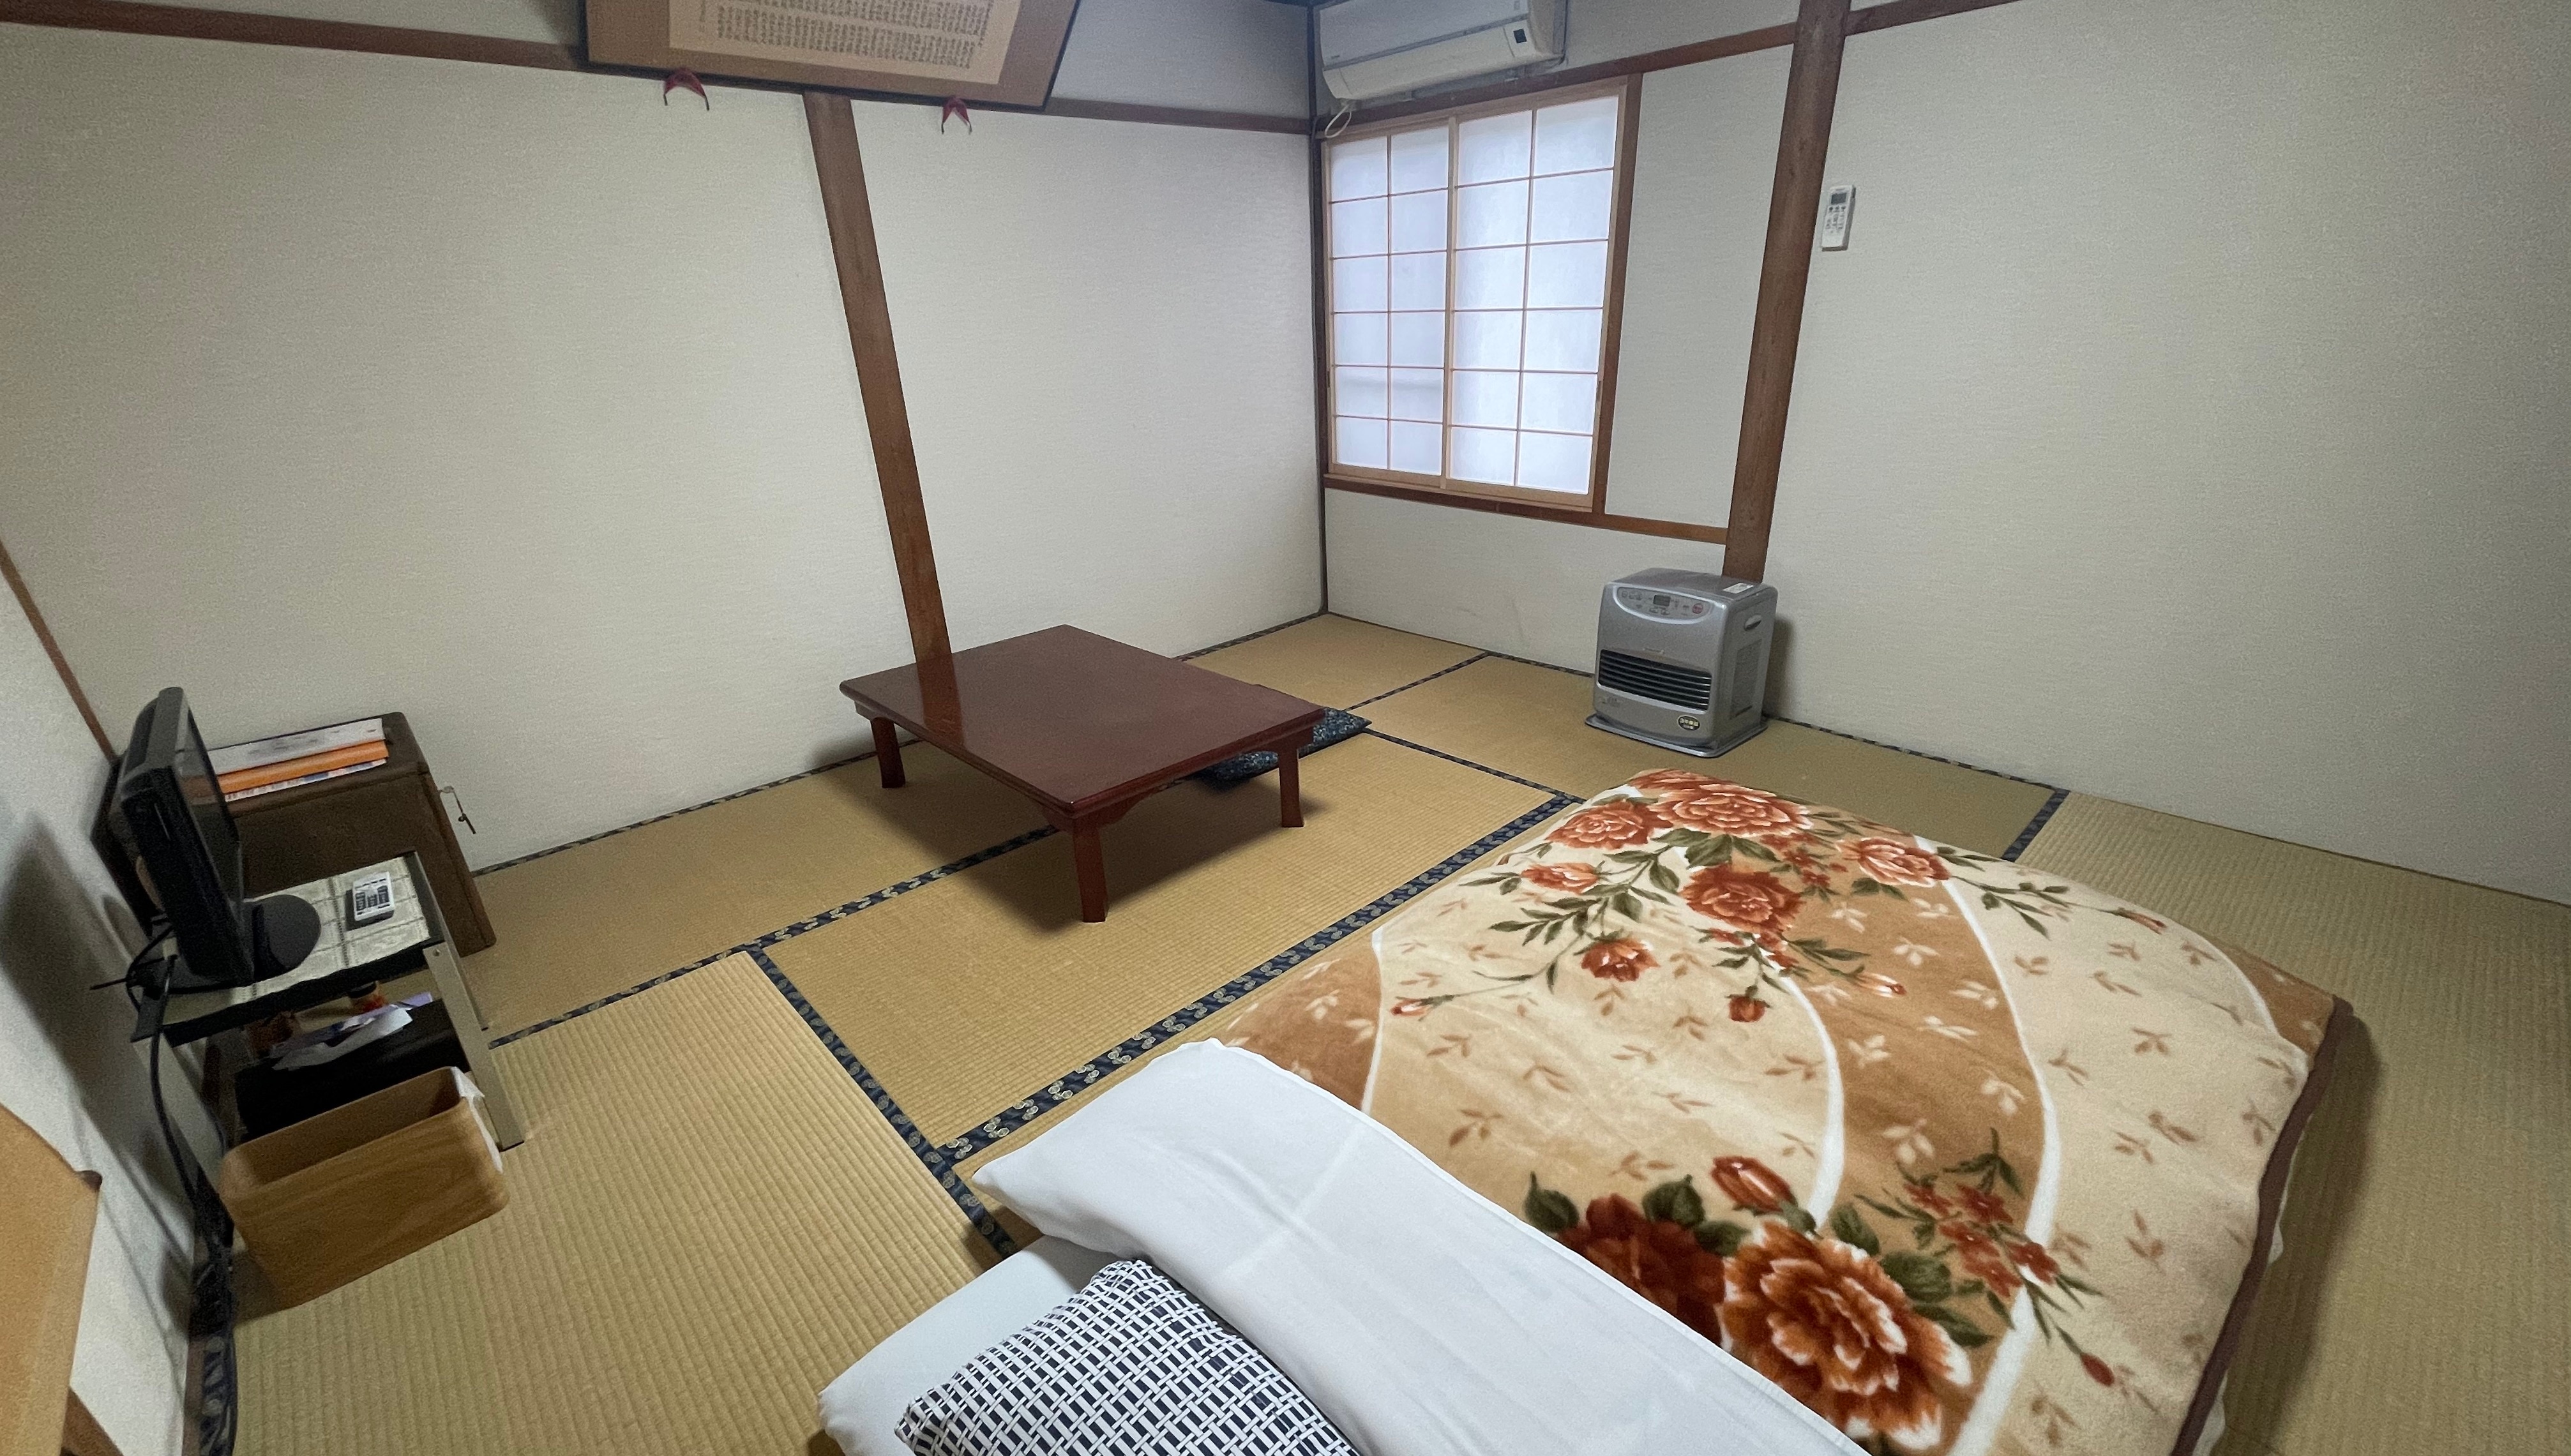 【日式房間】有550年曆史的日式房間-8-10張榻榻米